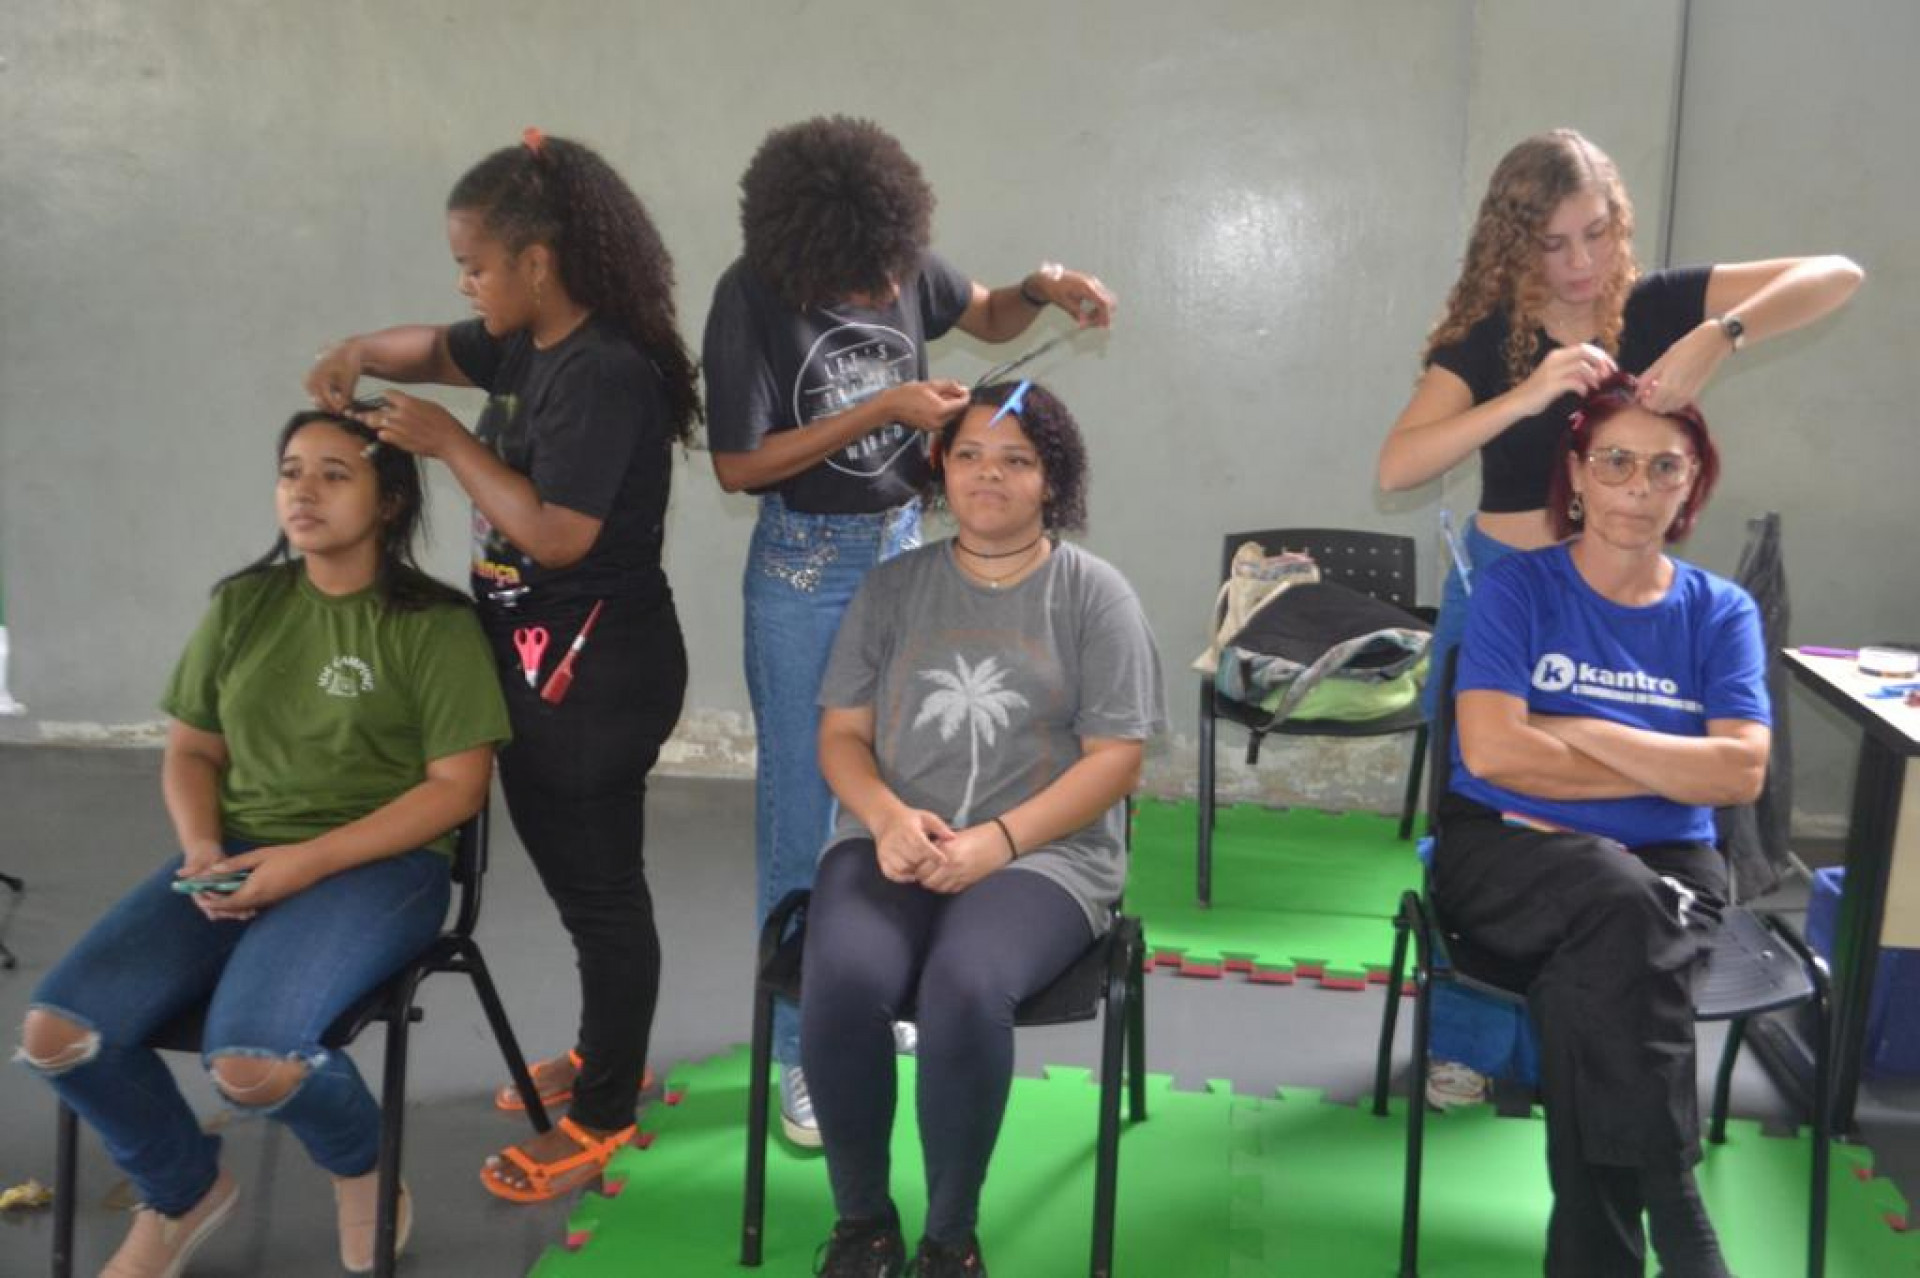 Serviços de beleza e corte de cabelo também foram oferecidos na ação social no IFRJ Nilópolis - Divulgação / PMN